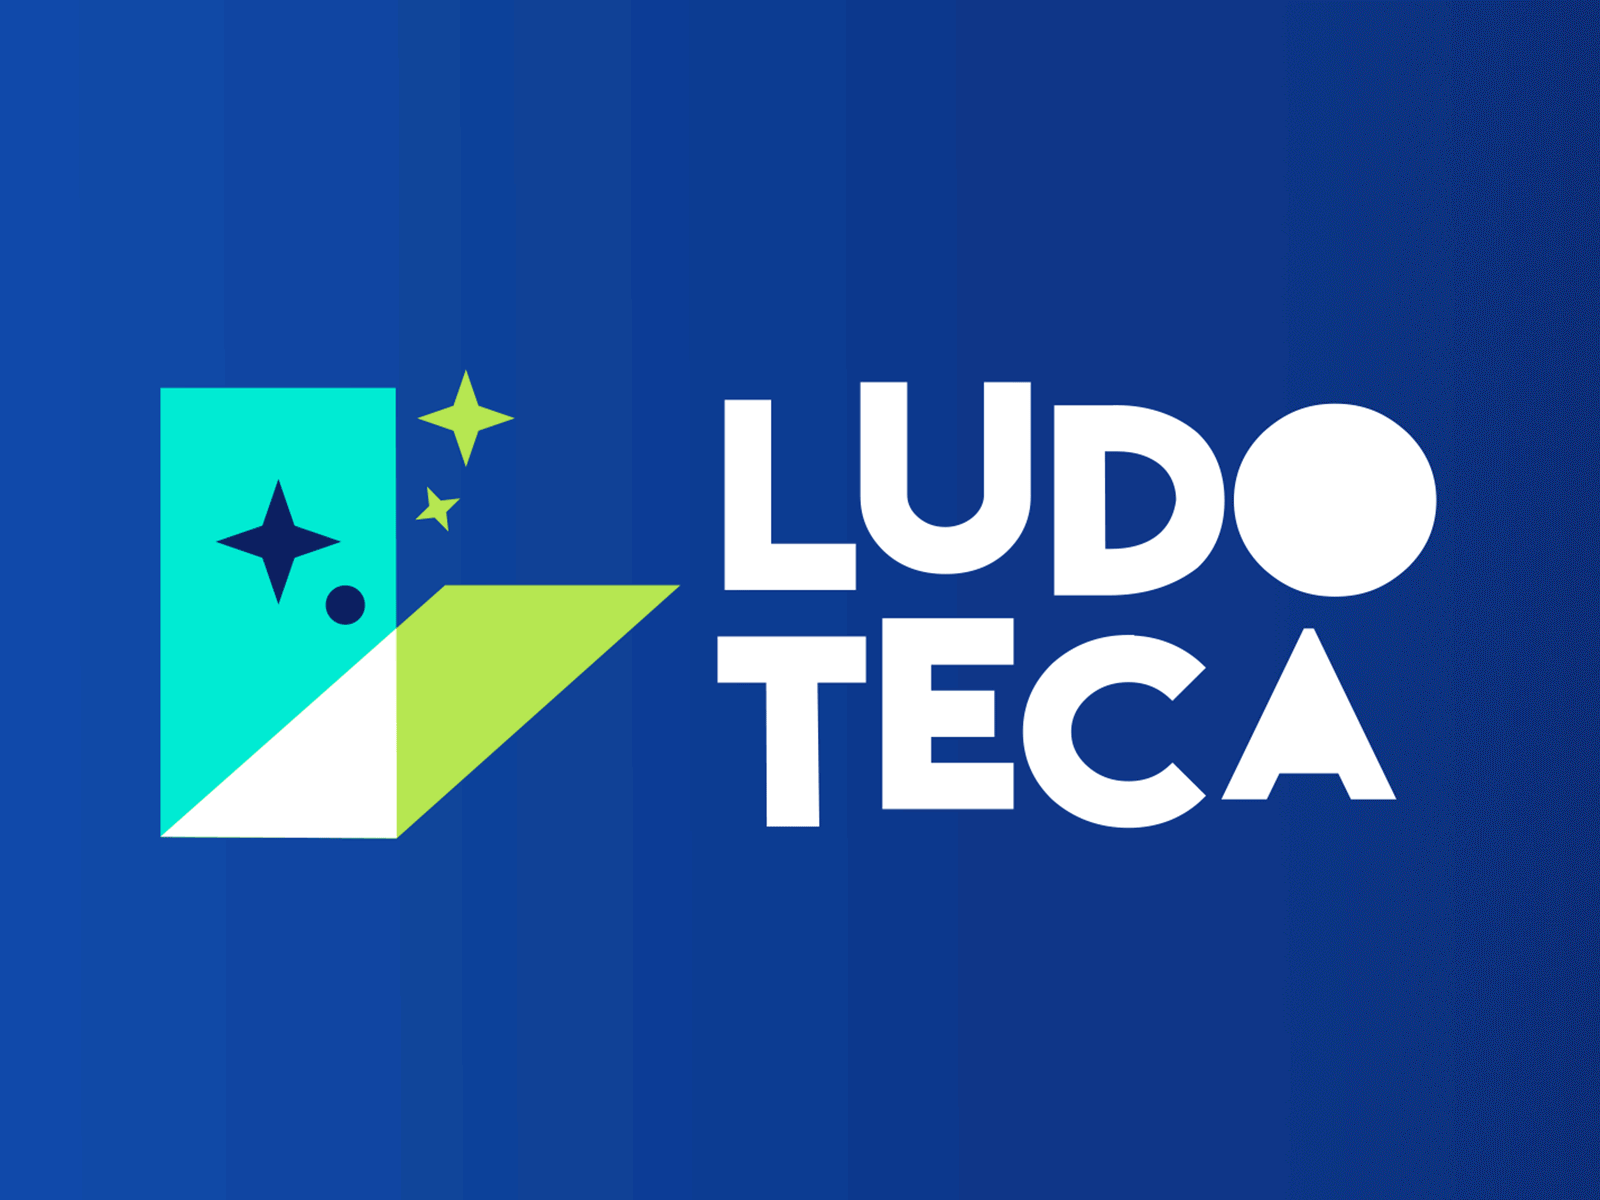 Ludoteca - Logo animation